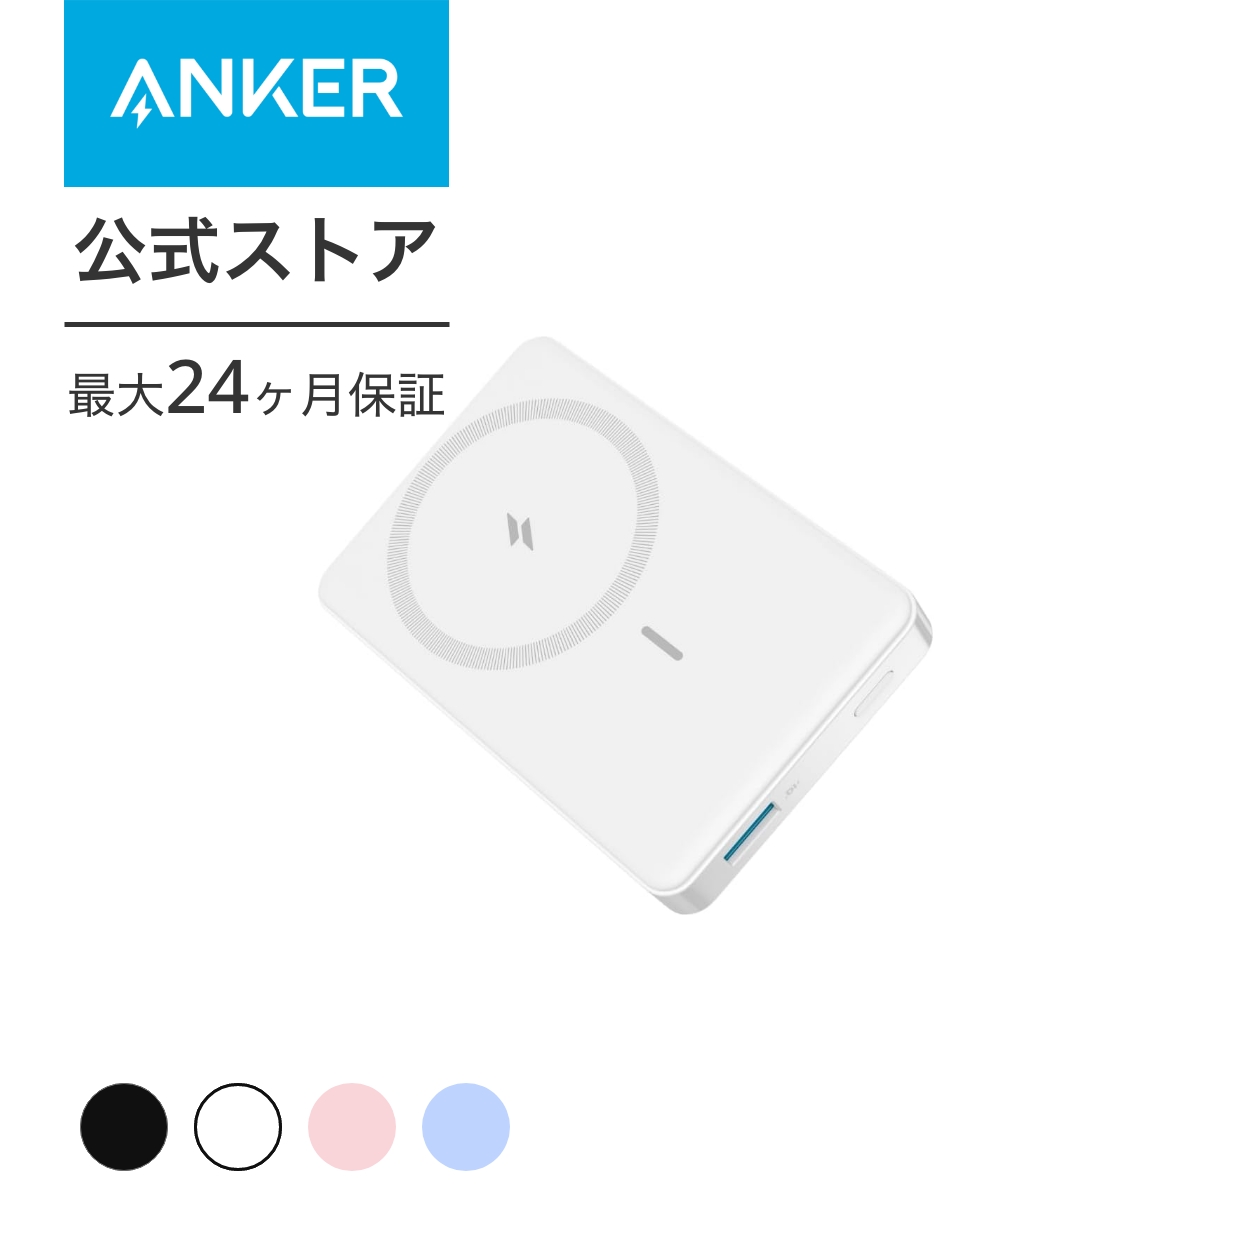 Anker 334 MagGo Battery (PowerCore 10000) (マグネット式ワ...